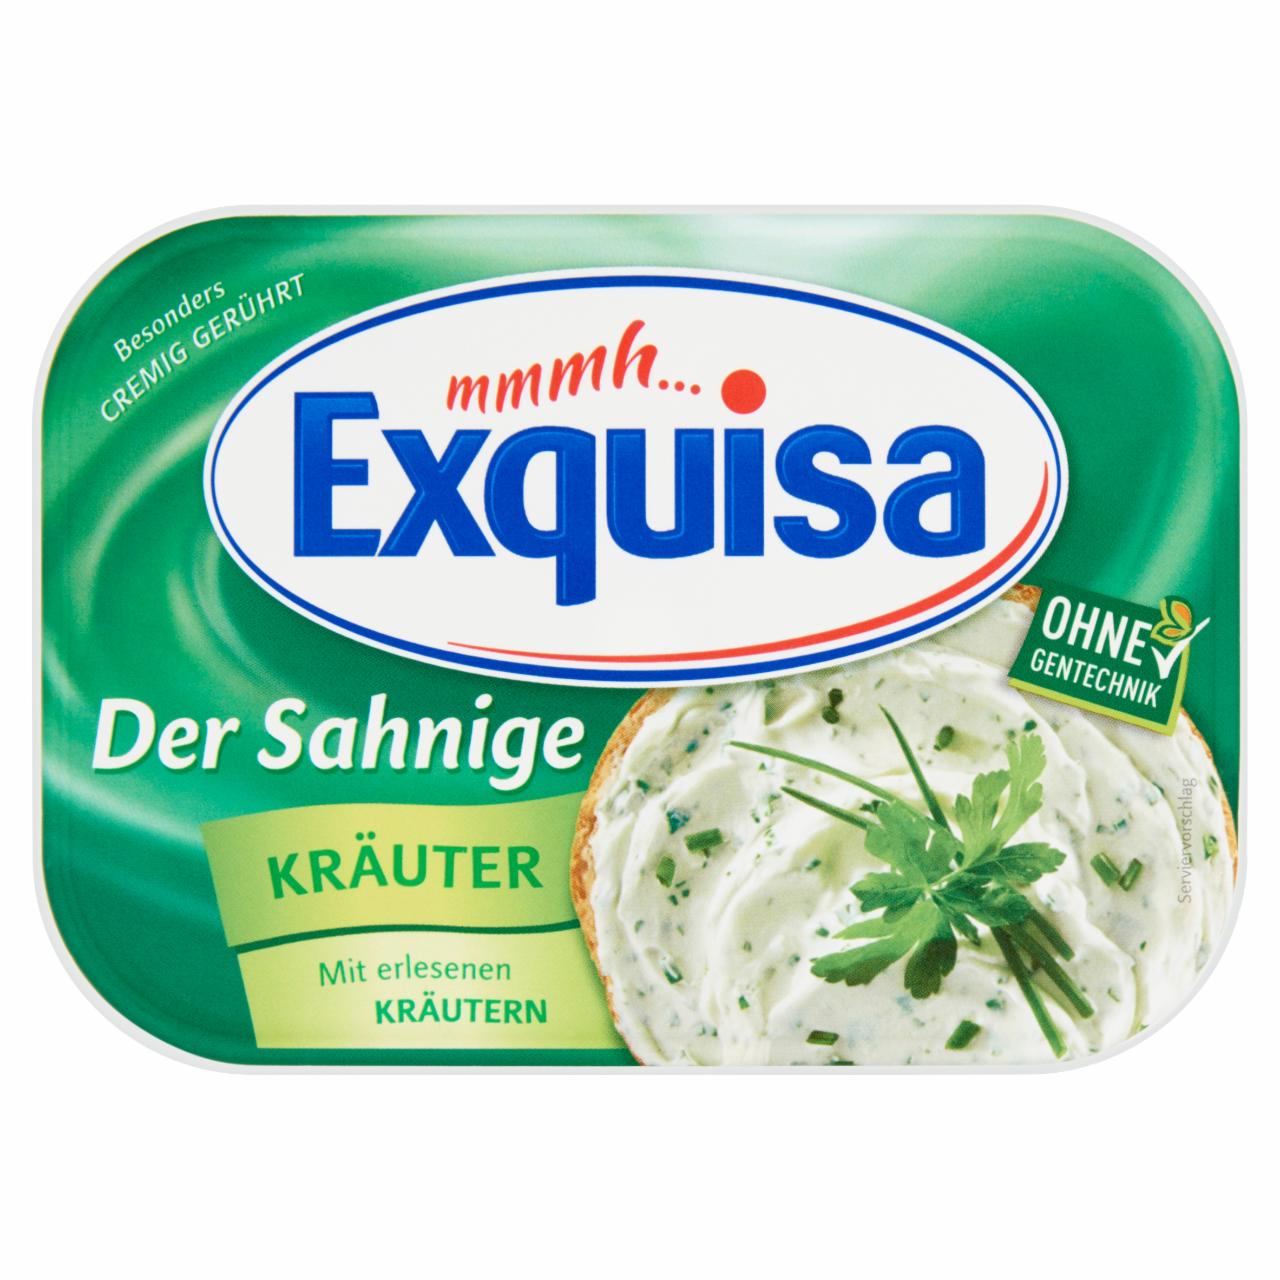 Képek - Exquisa fűszeres, fokhagymás sajtkrém 200 g